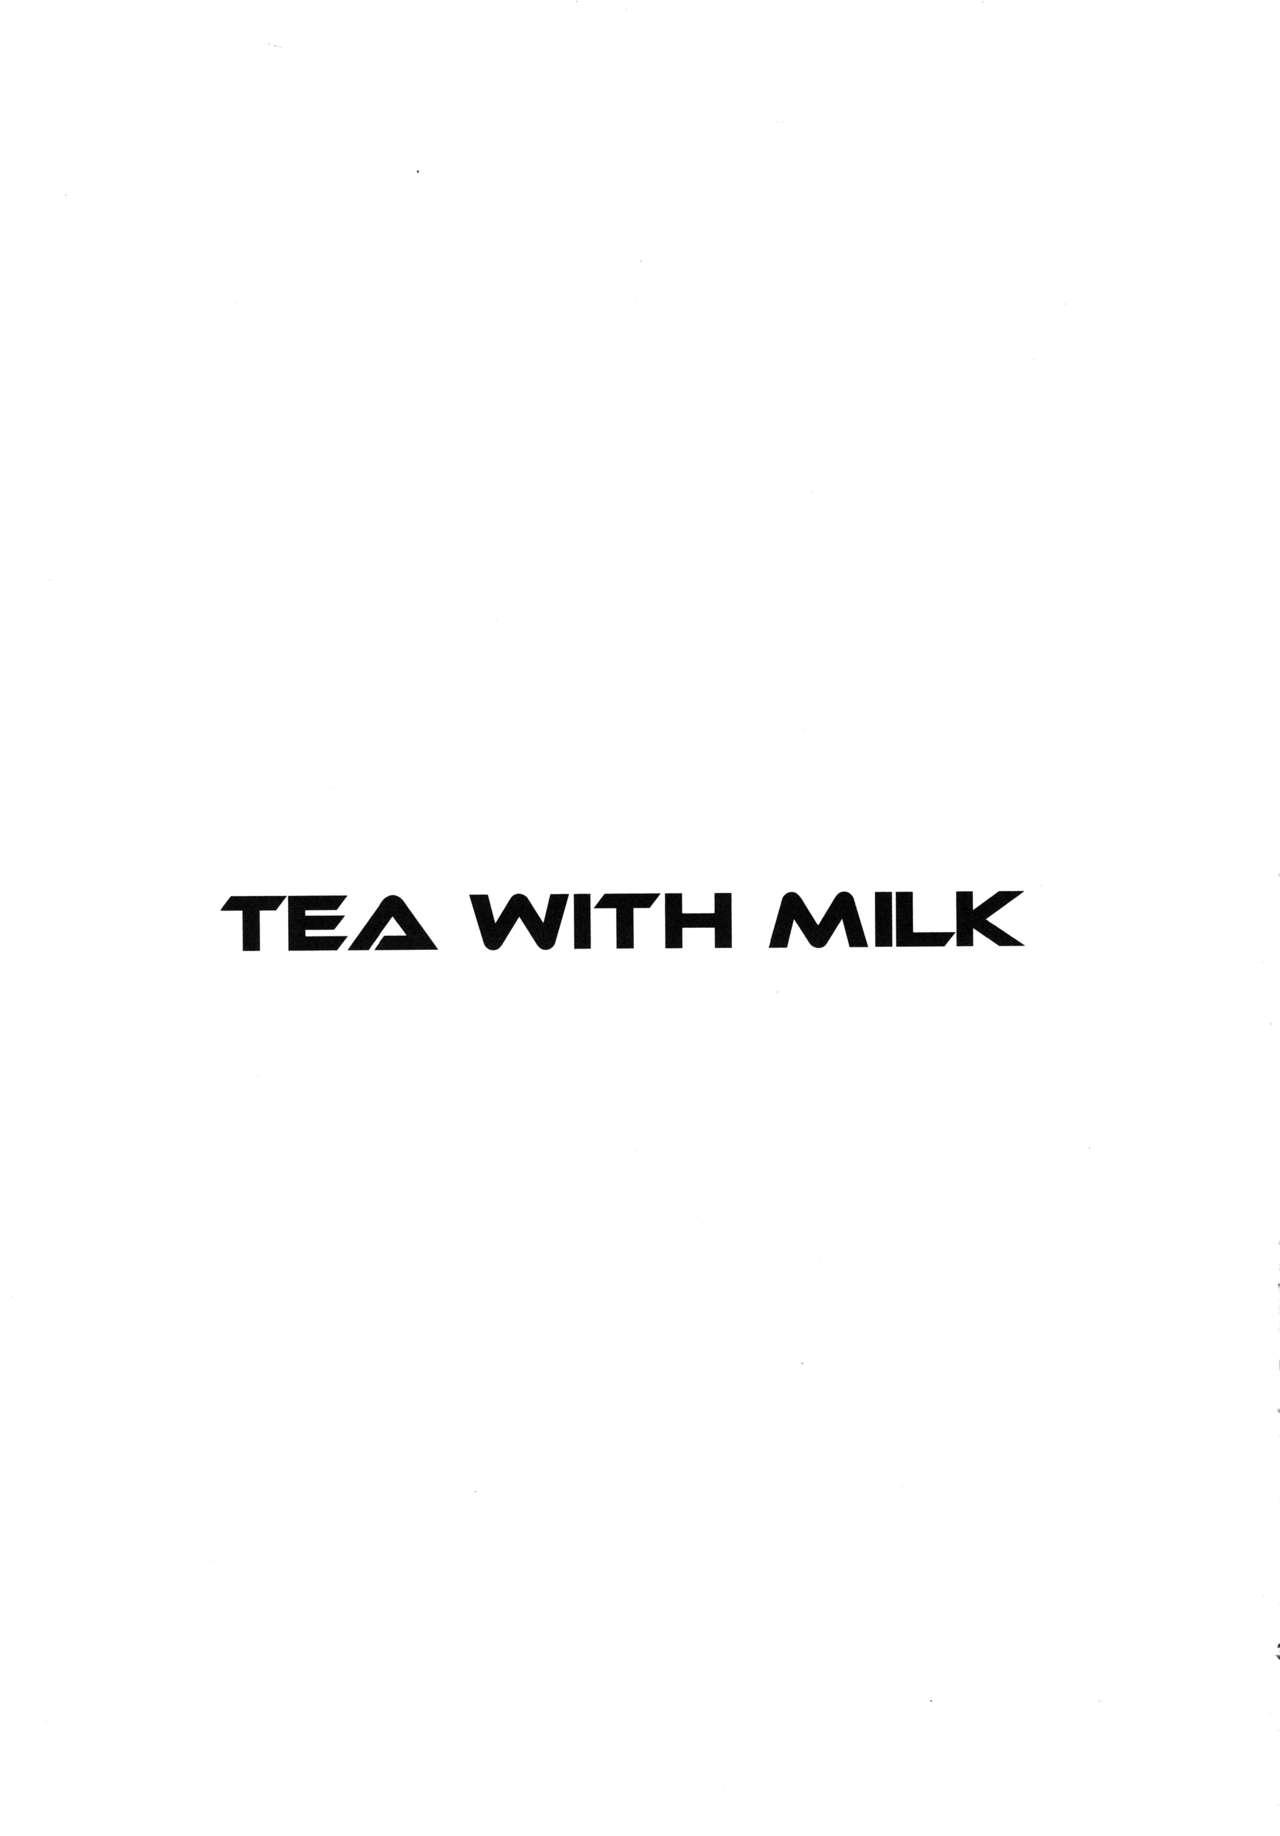 4some TEA WITH MILK - Girls und panzer Tattoos - Page 3